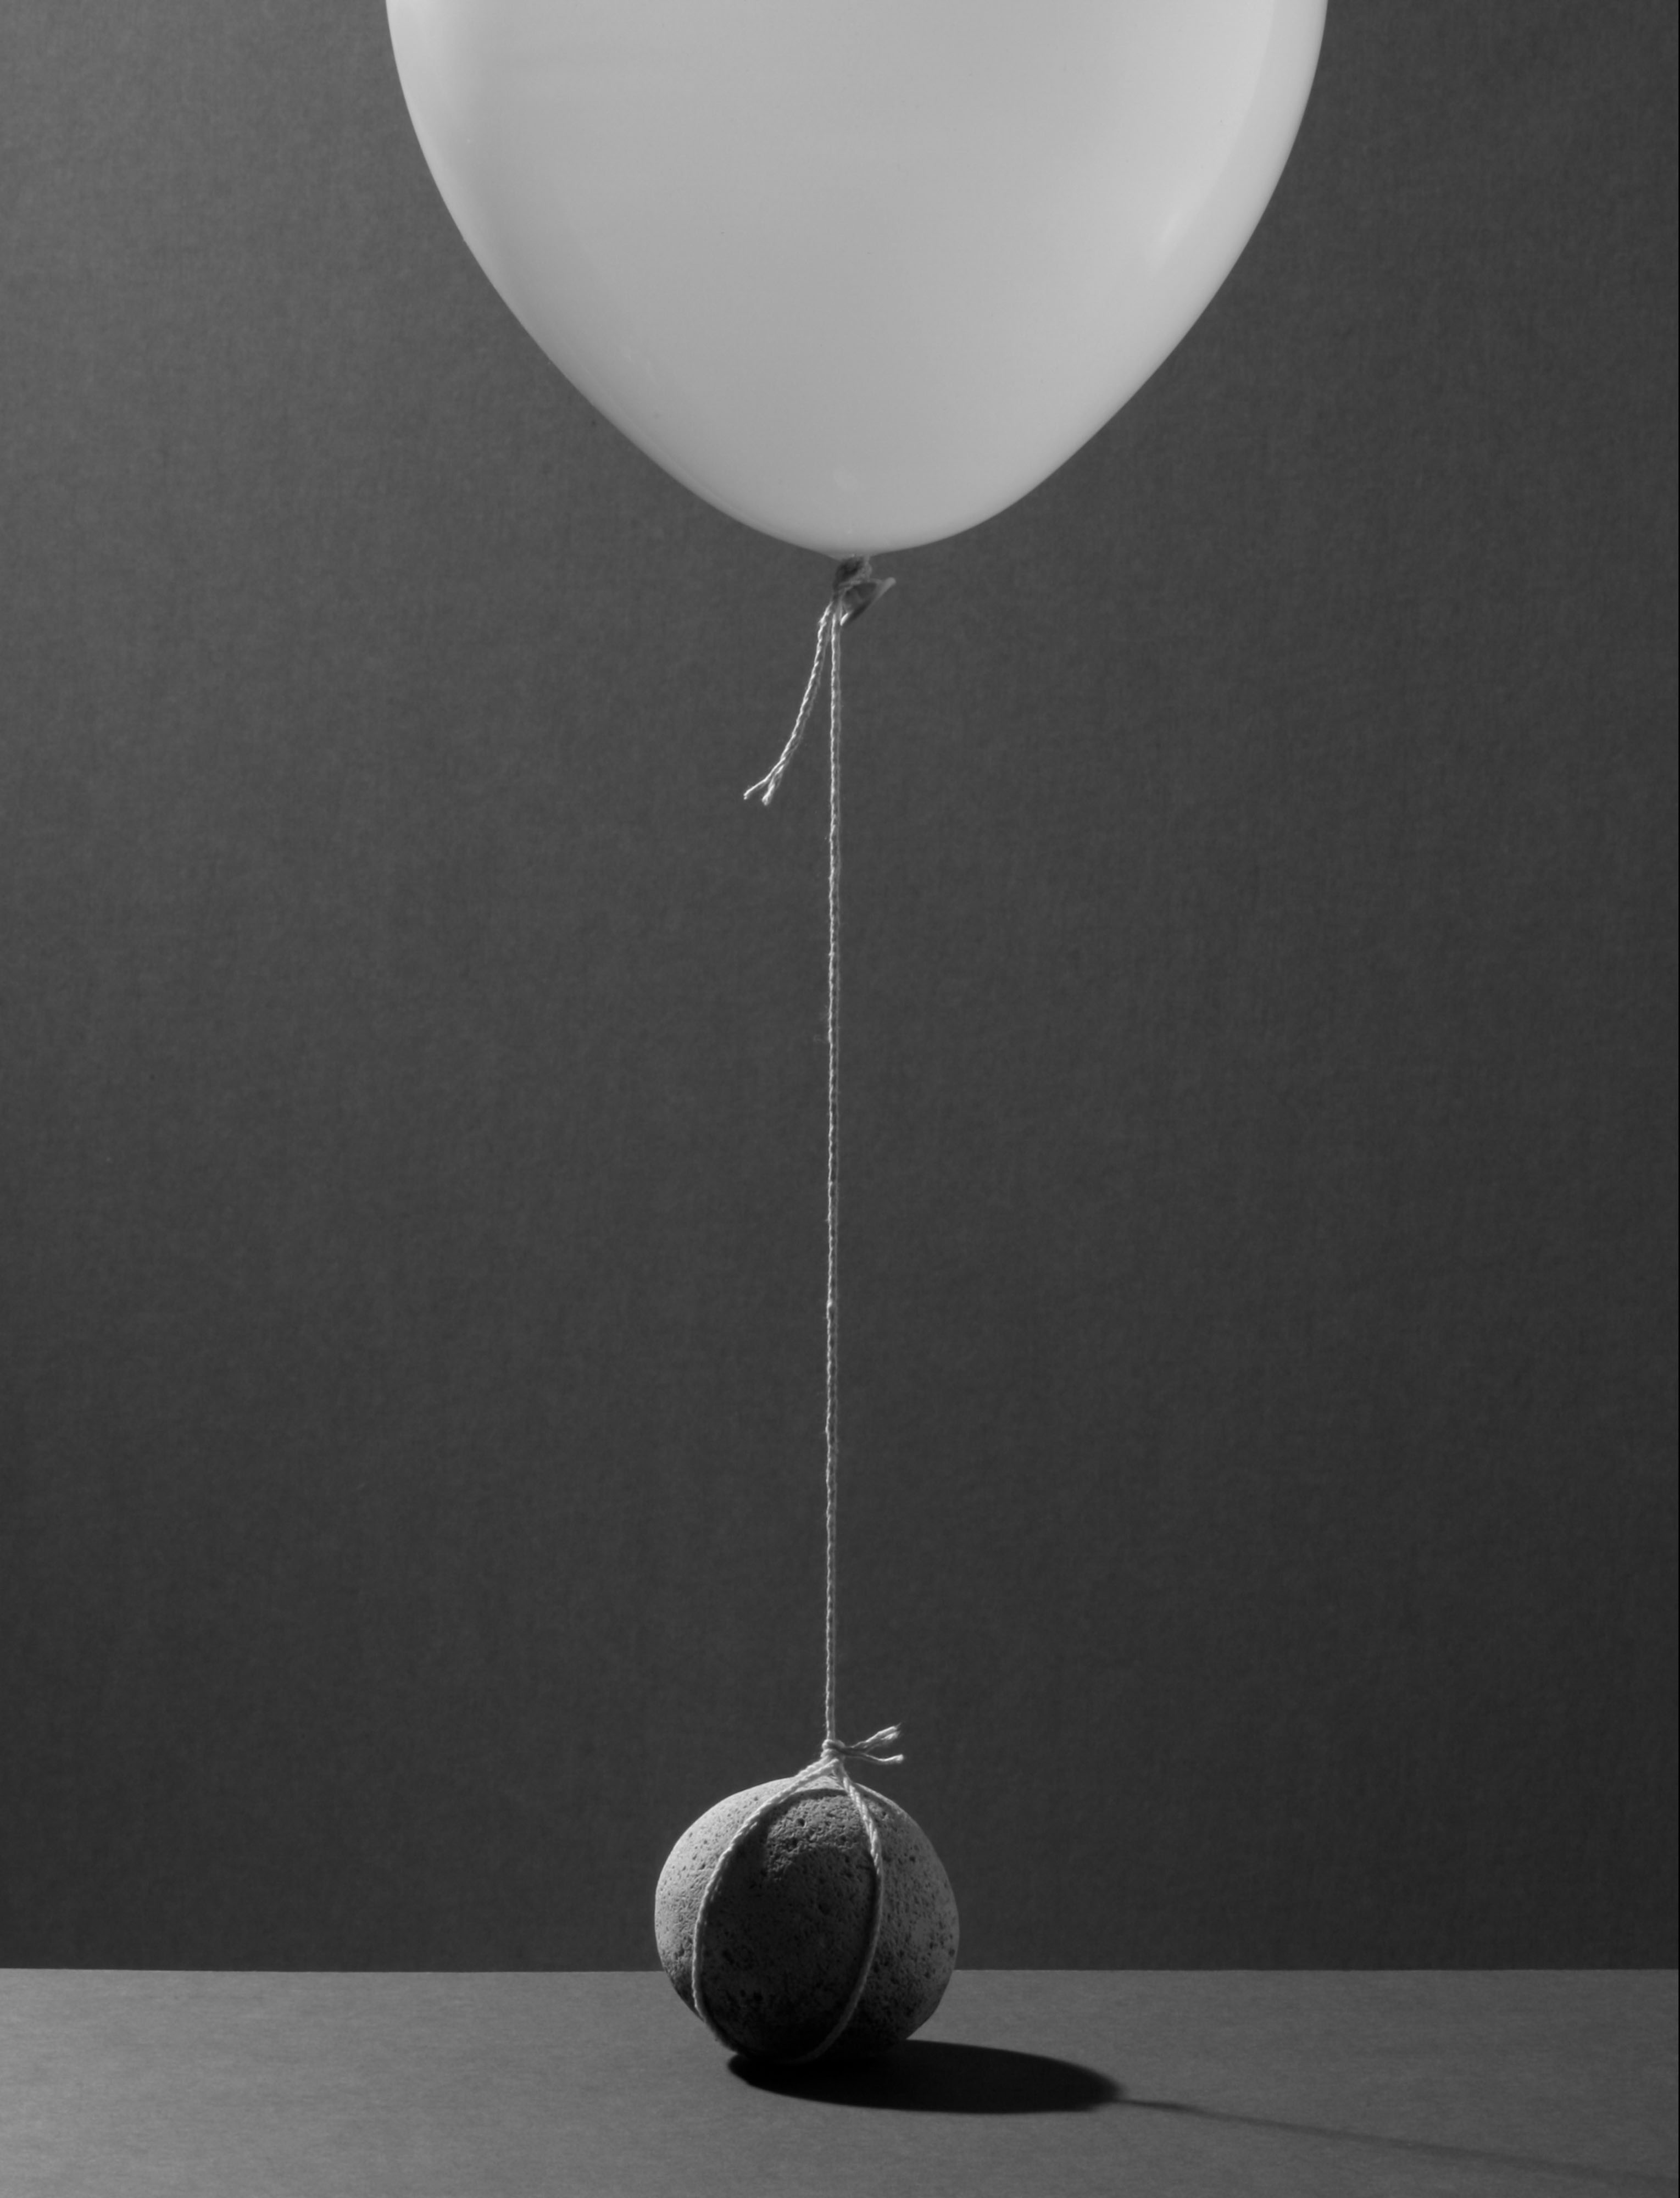 weighted_balloon_mf